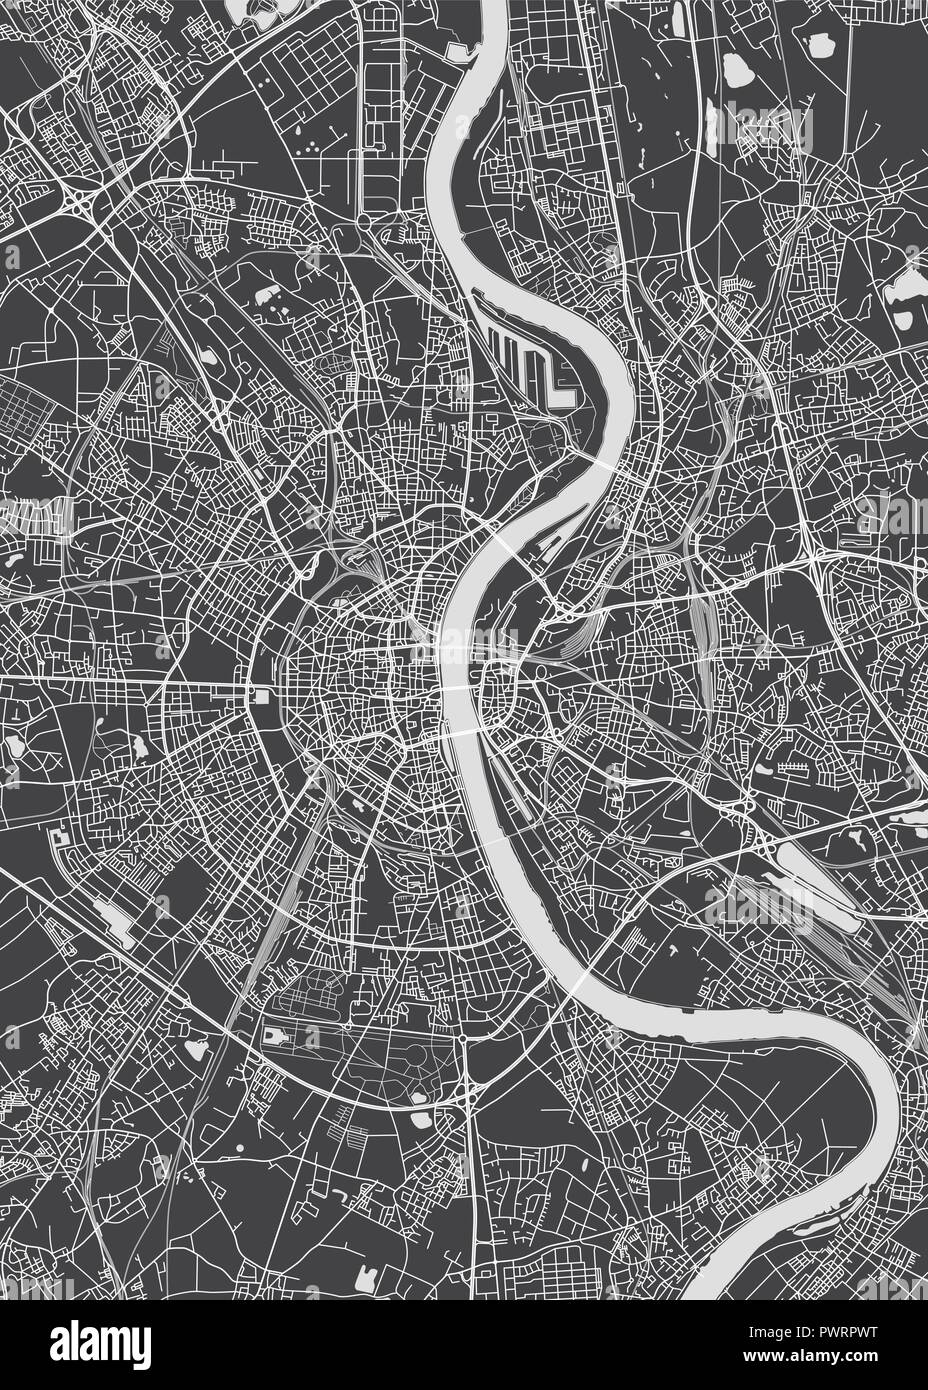 Plan détaillé de la ville de Cologne, carte vecteur plan détaillé de la ville, les rivières et les rues Illustration de Vecteur